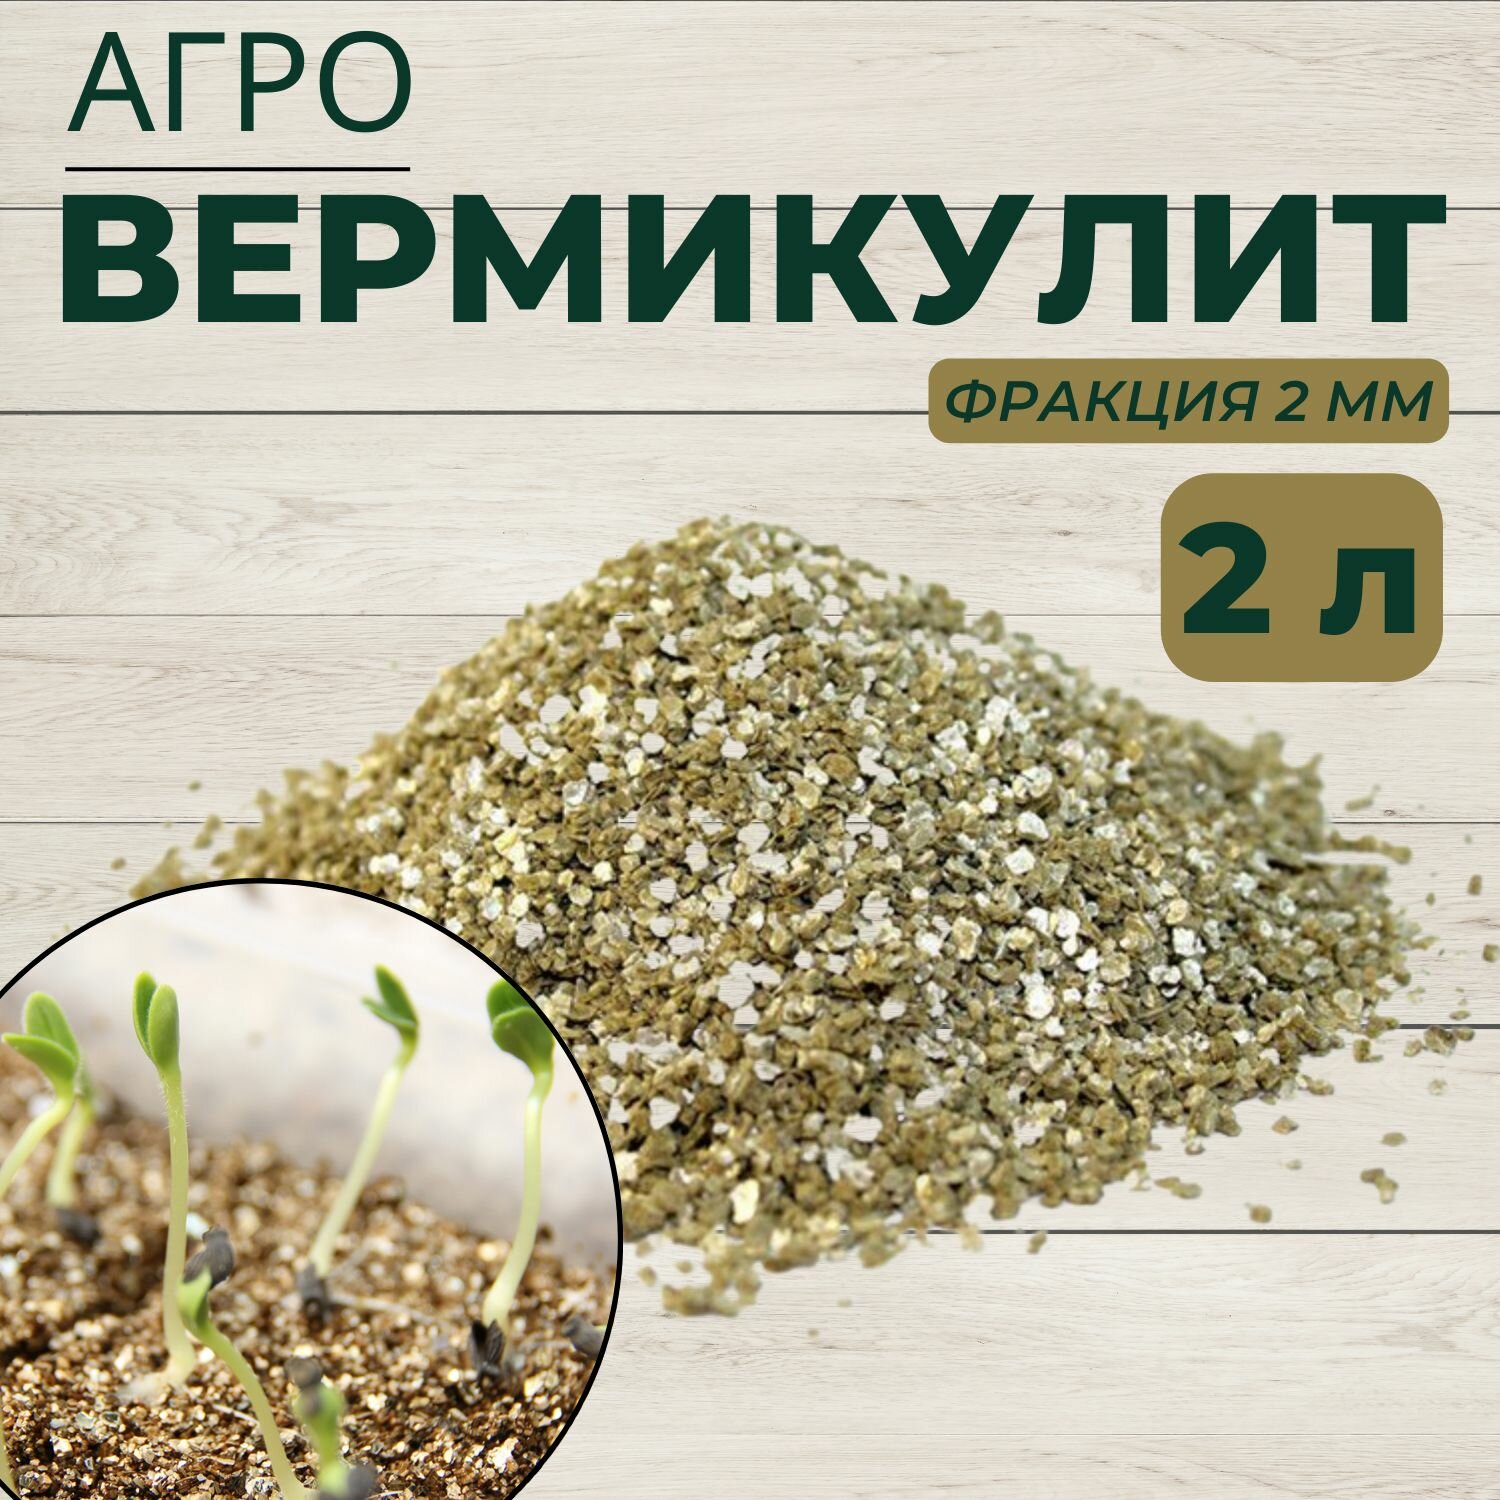 Вермикулит агротехнический для растений фракция 2 мм / грунт для проращивания рассады, 2 л